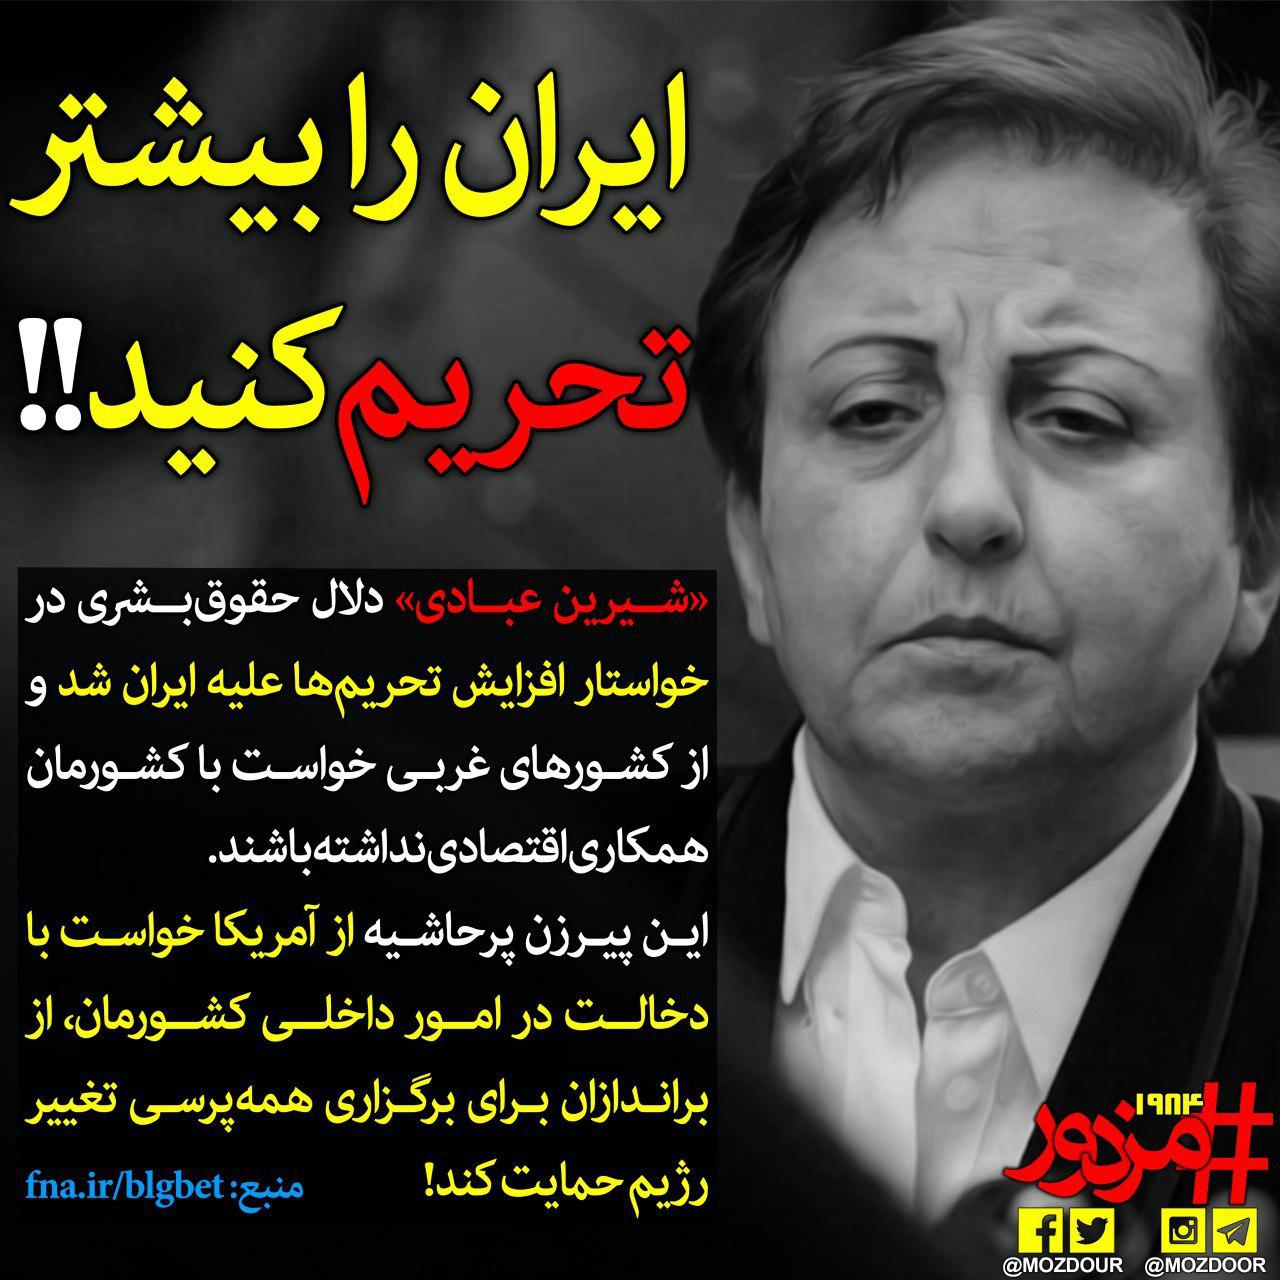 ایران را بیشتر تحریم کنید!!